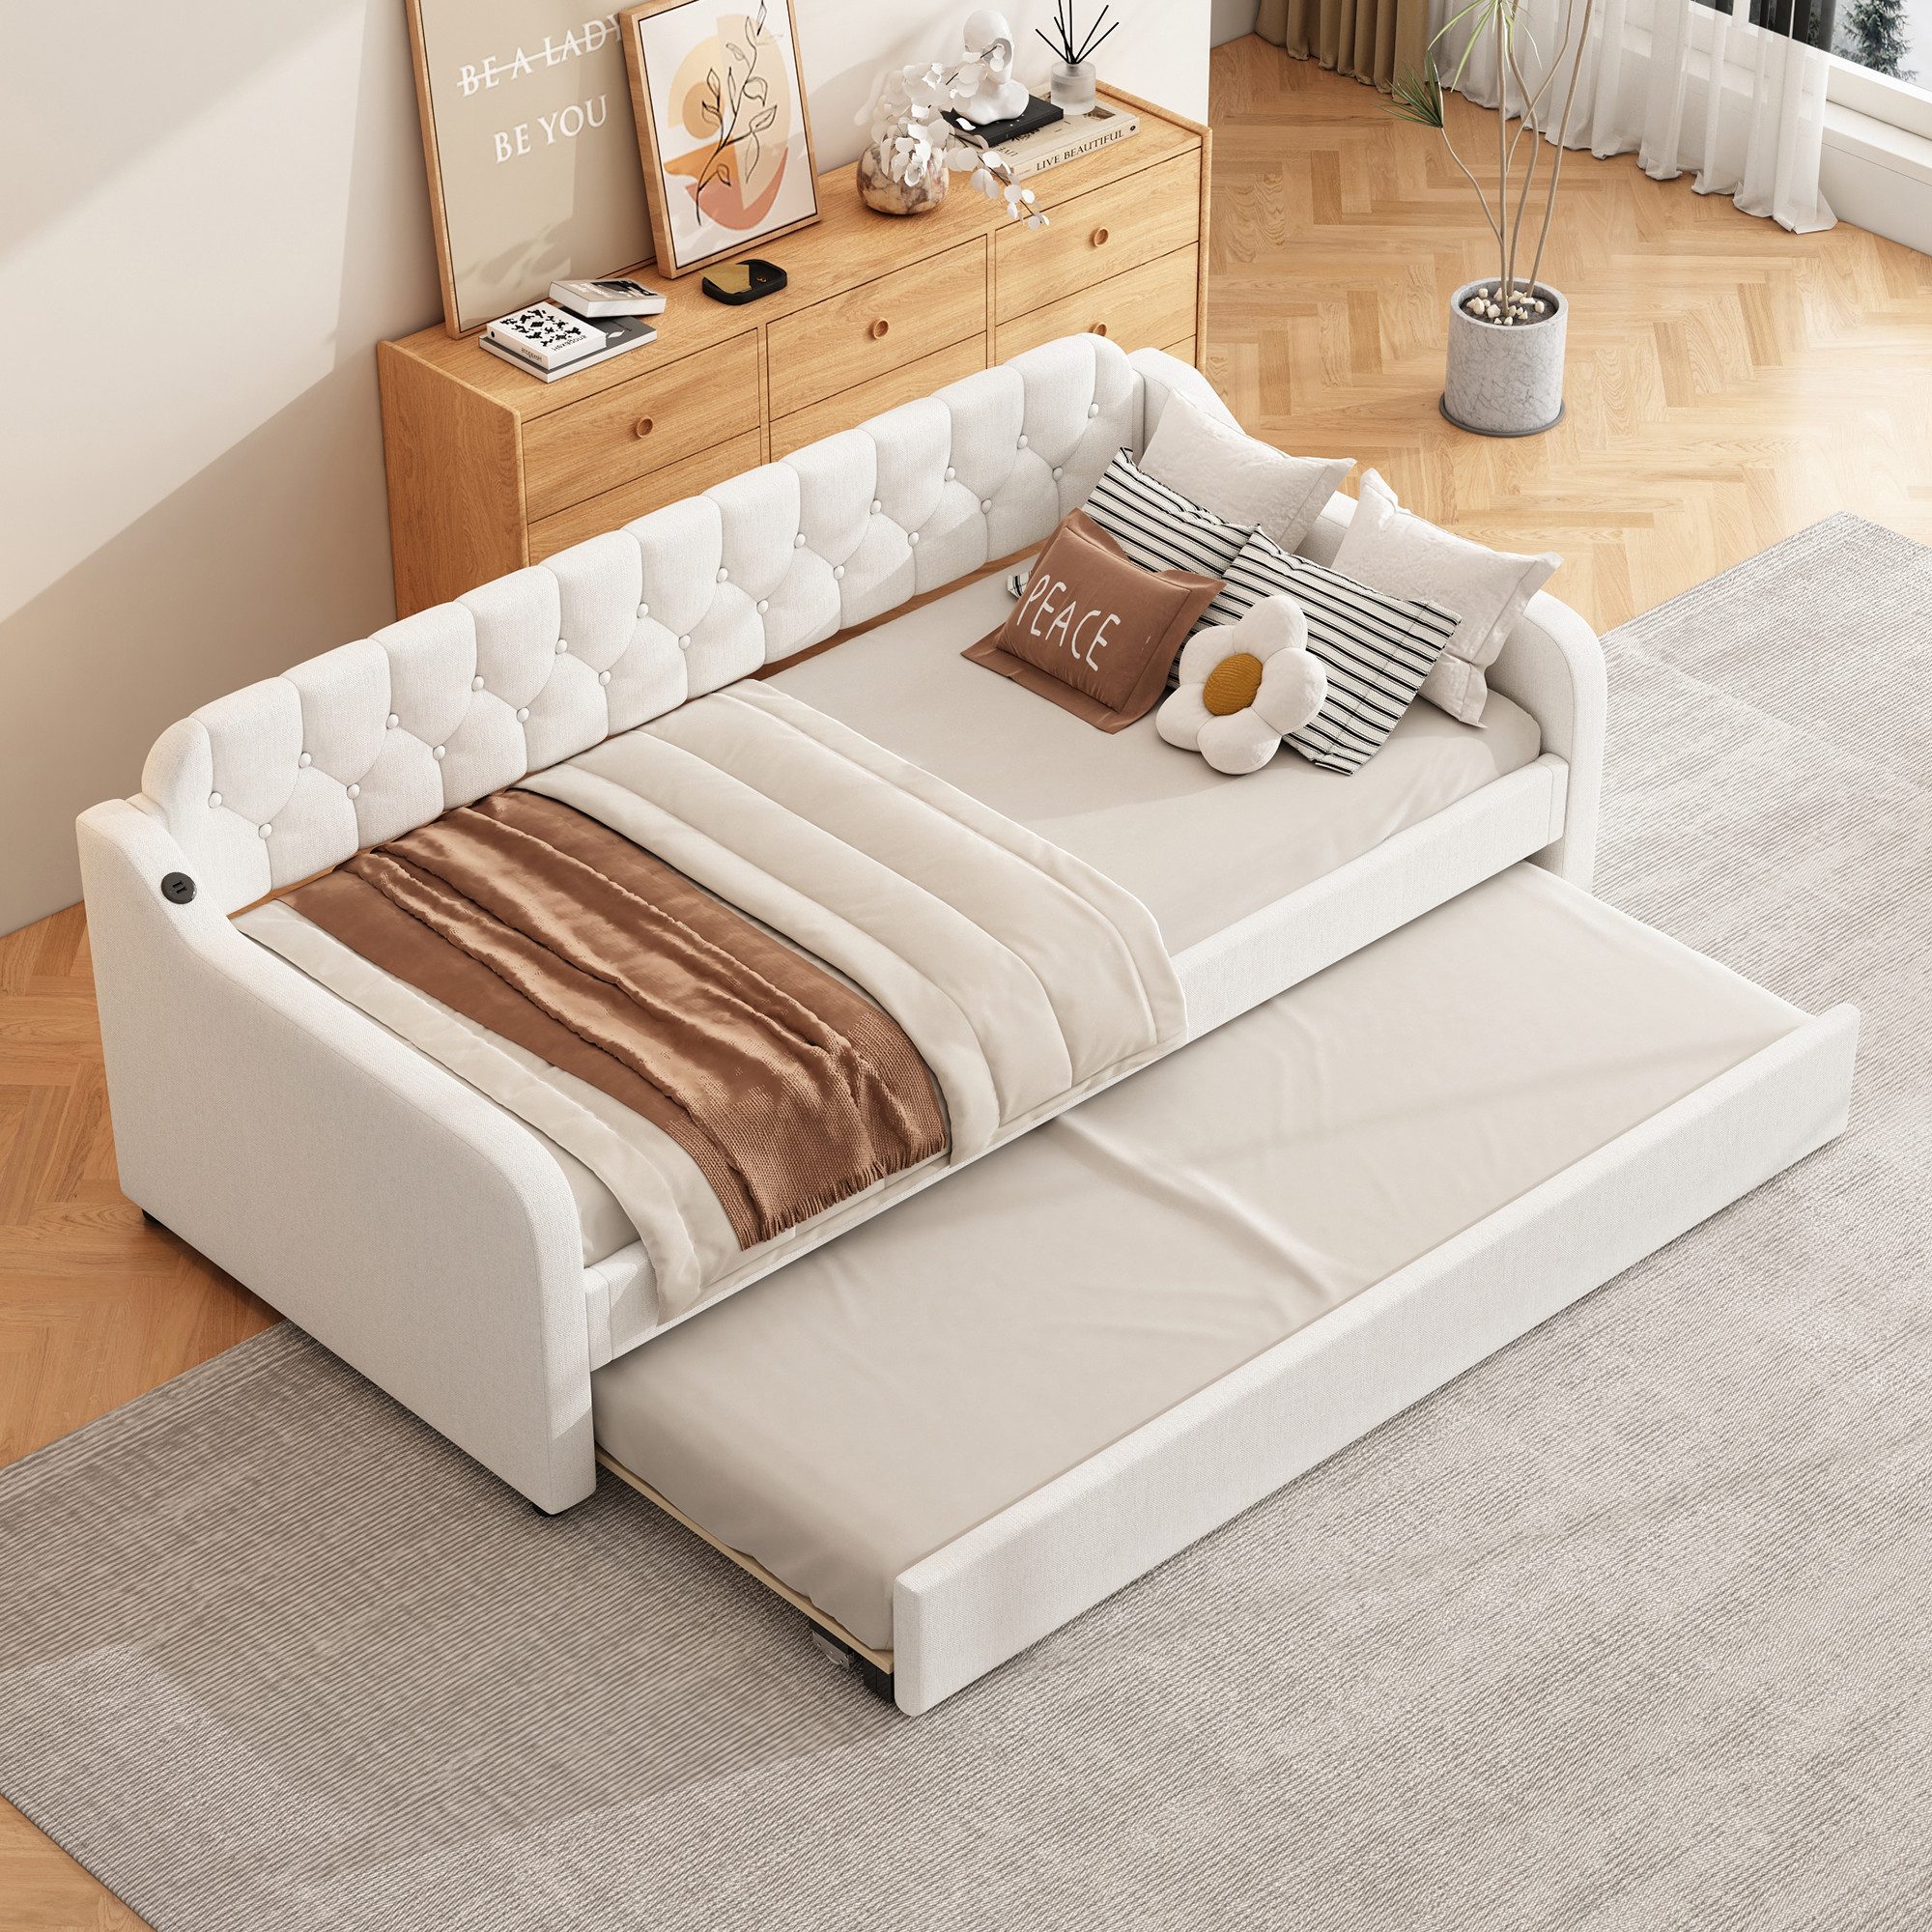 HAUSS SPLOE Schlafsofa 90x200cm Tagesbett mit ausziehbares Rollbett, USB-Anschluss, beige, 90*200cm, ohne Matratze